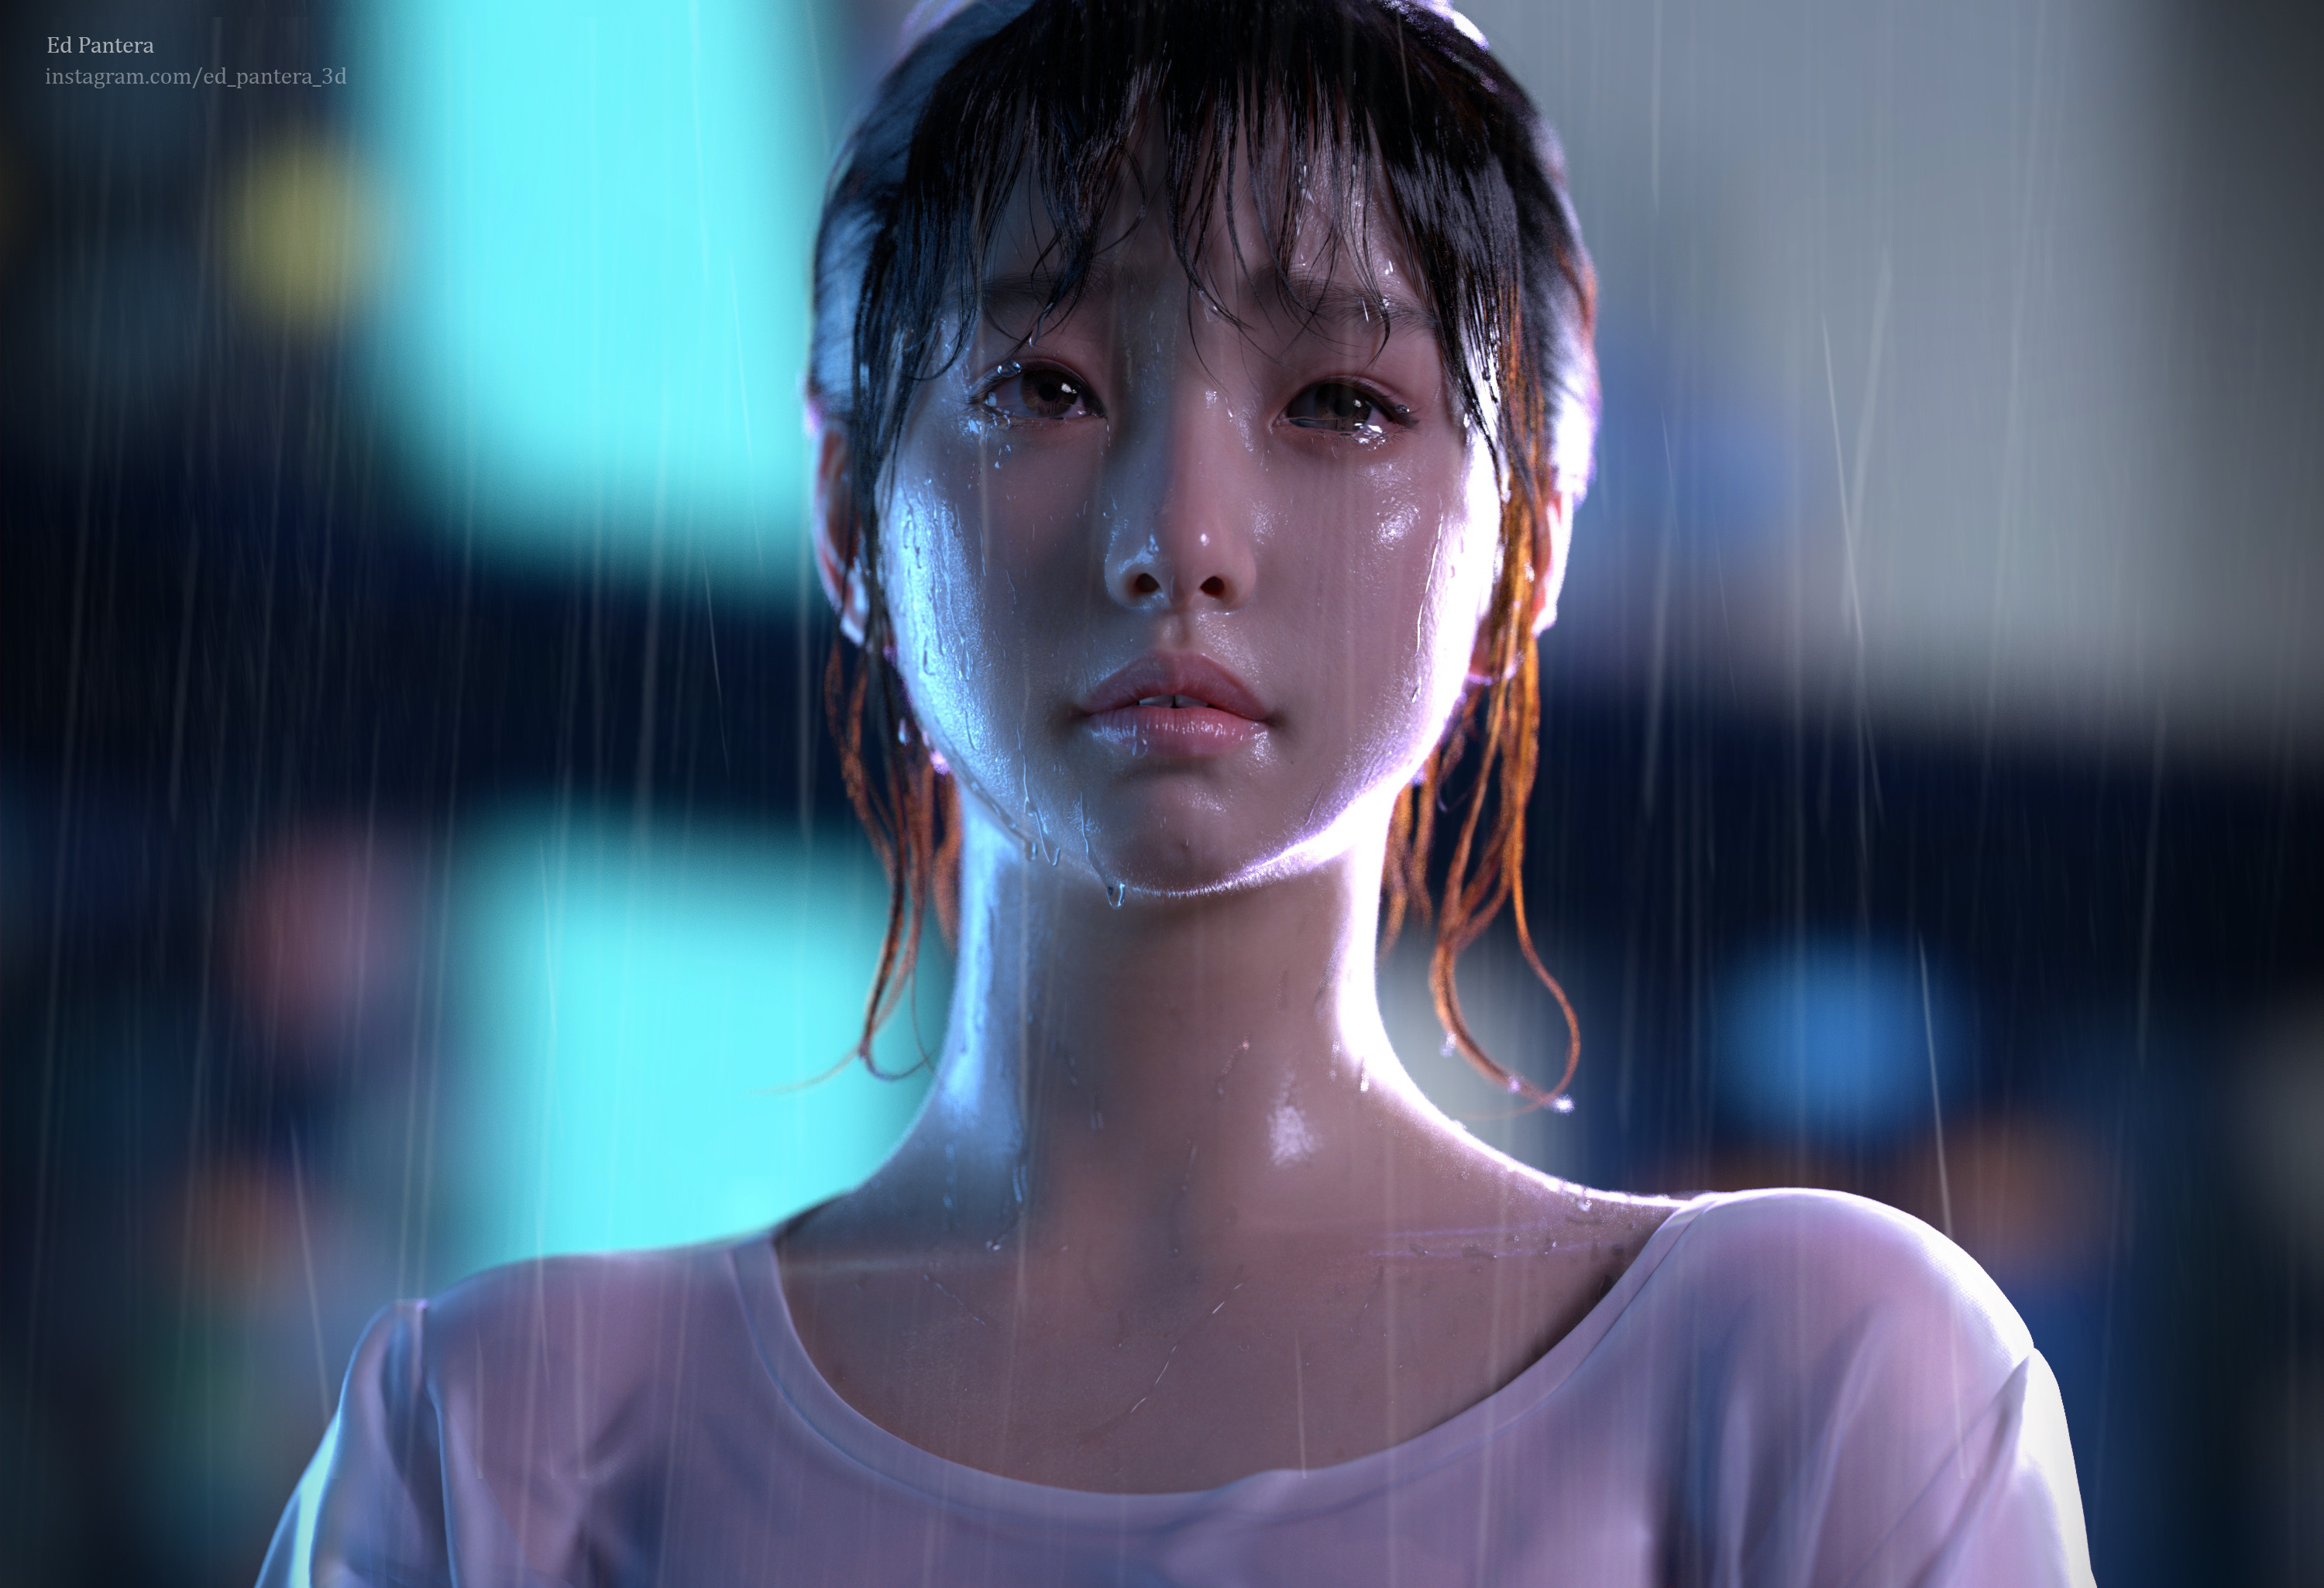 3D Render Digital Art Women Asian Wet Wet Hair Face Portrait Ed Pantera 3000x2050